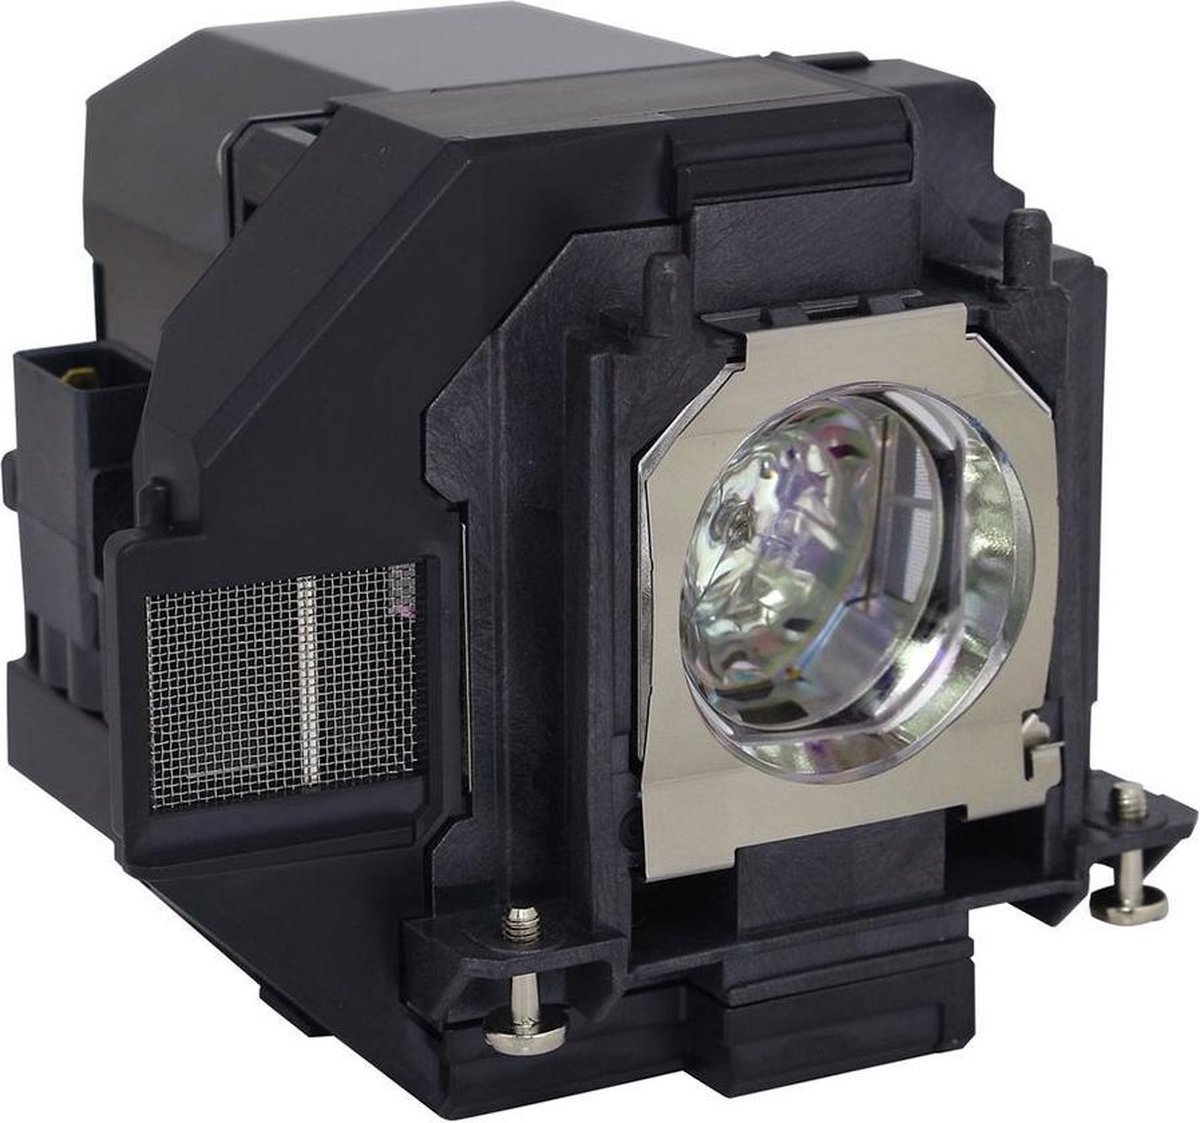 Beamerlamp geschikt voor de EPSON EB-S05 beamer, lamp code LP96 / V13H010L96. Bevat originele UHP lamp, prestaties gelijk aan origineel.